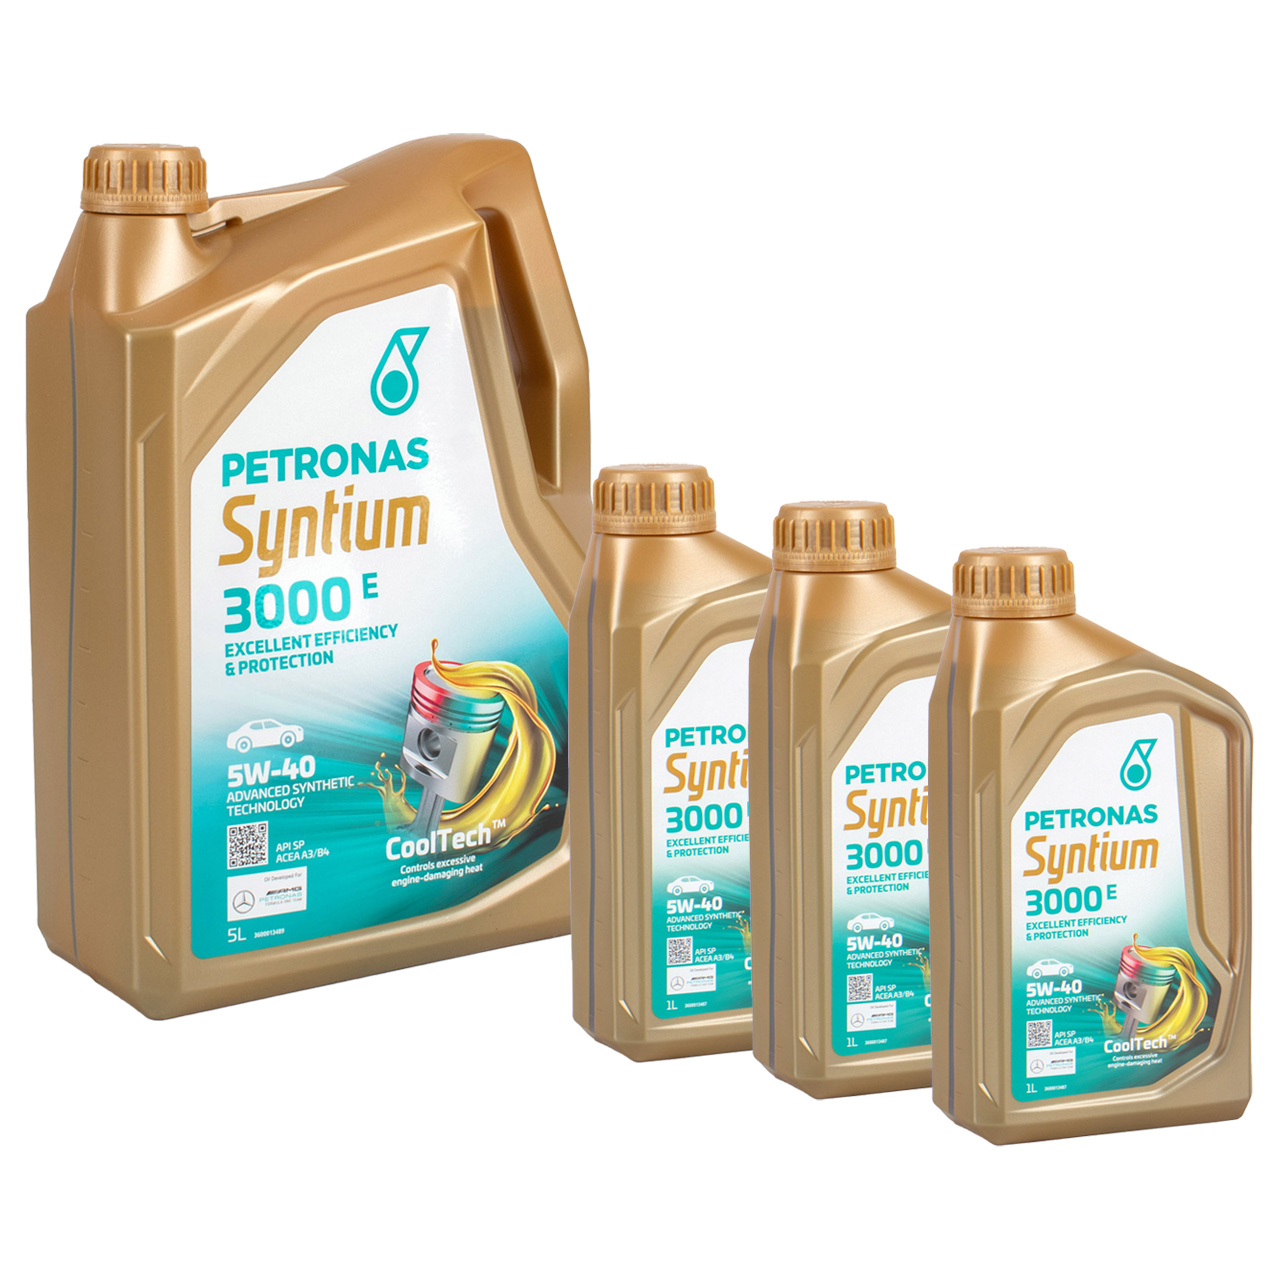 8L 8 Liter PETRONAS Syntium 3000 E 5W-40 Motoröl Öl BMW LL-01 MB 229.5 VW 502/505.00